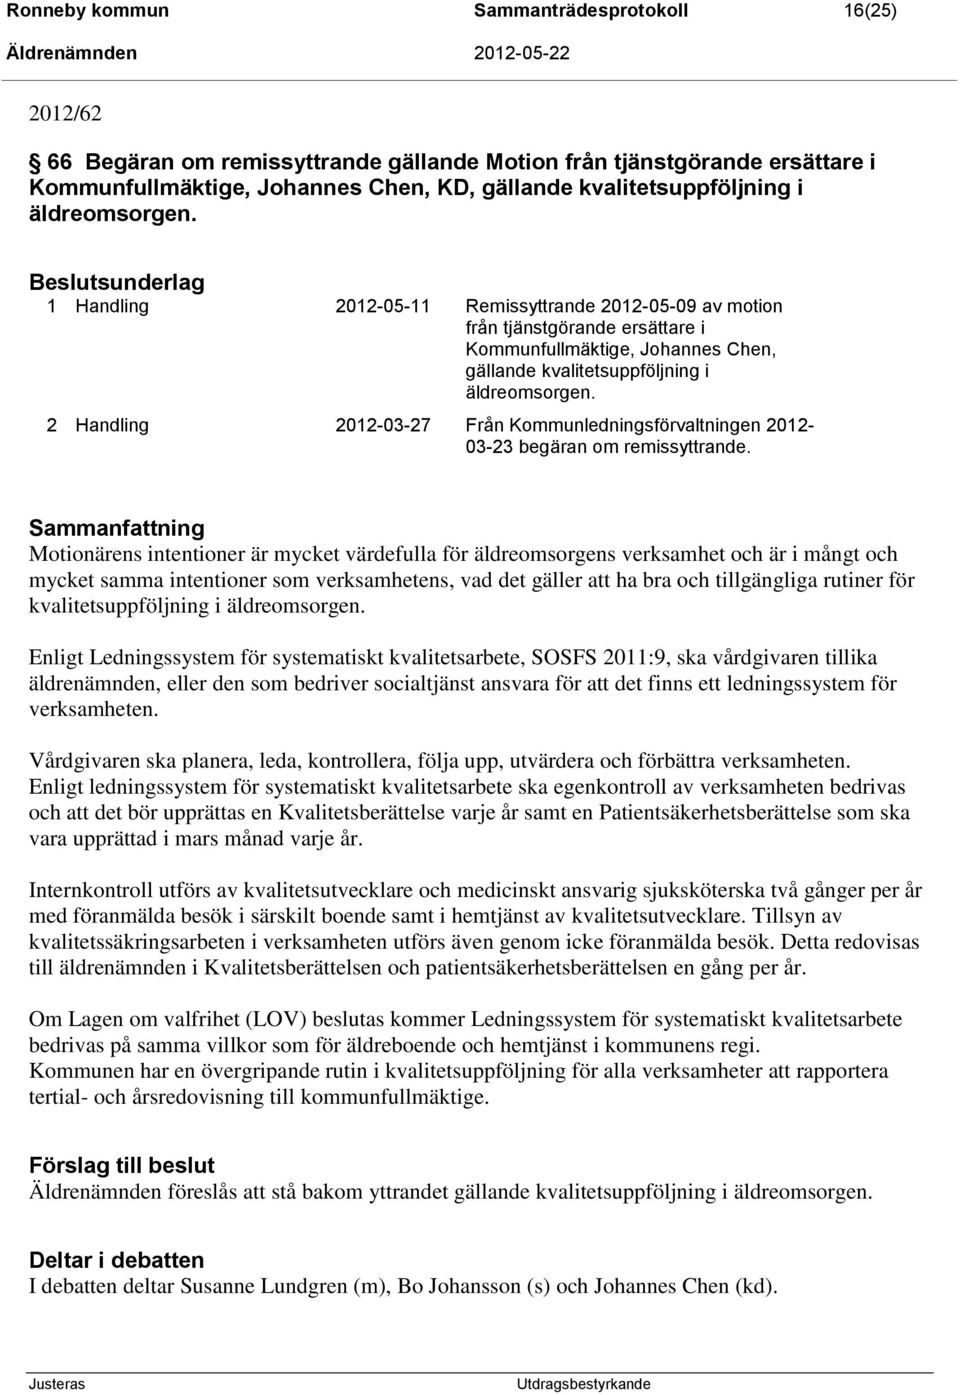 2 Handling 2012-03-27 Från Kommunledningsförvaltningen 2012-03-23 begäran om remissyttrande.